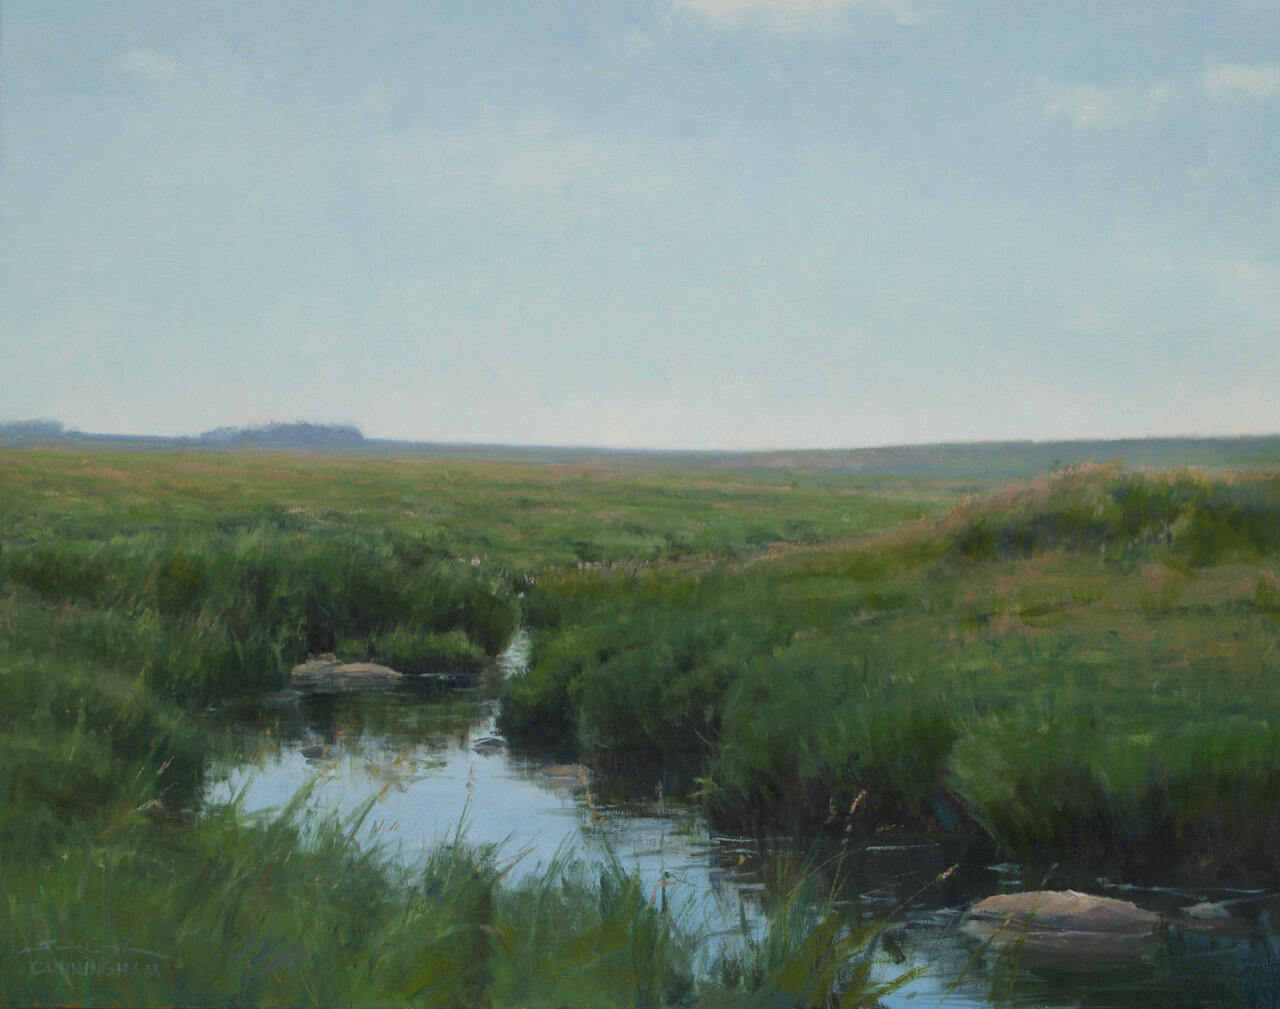 A Prairie Creek